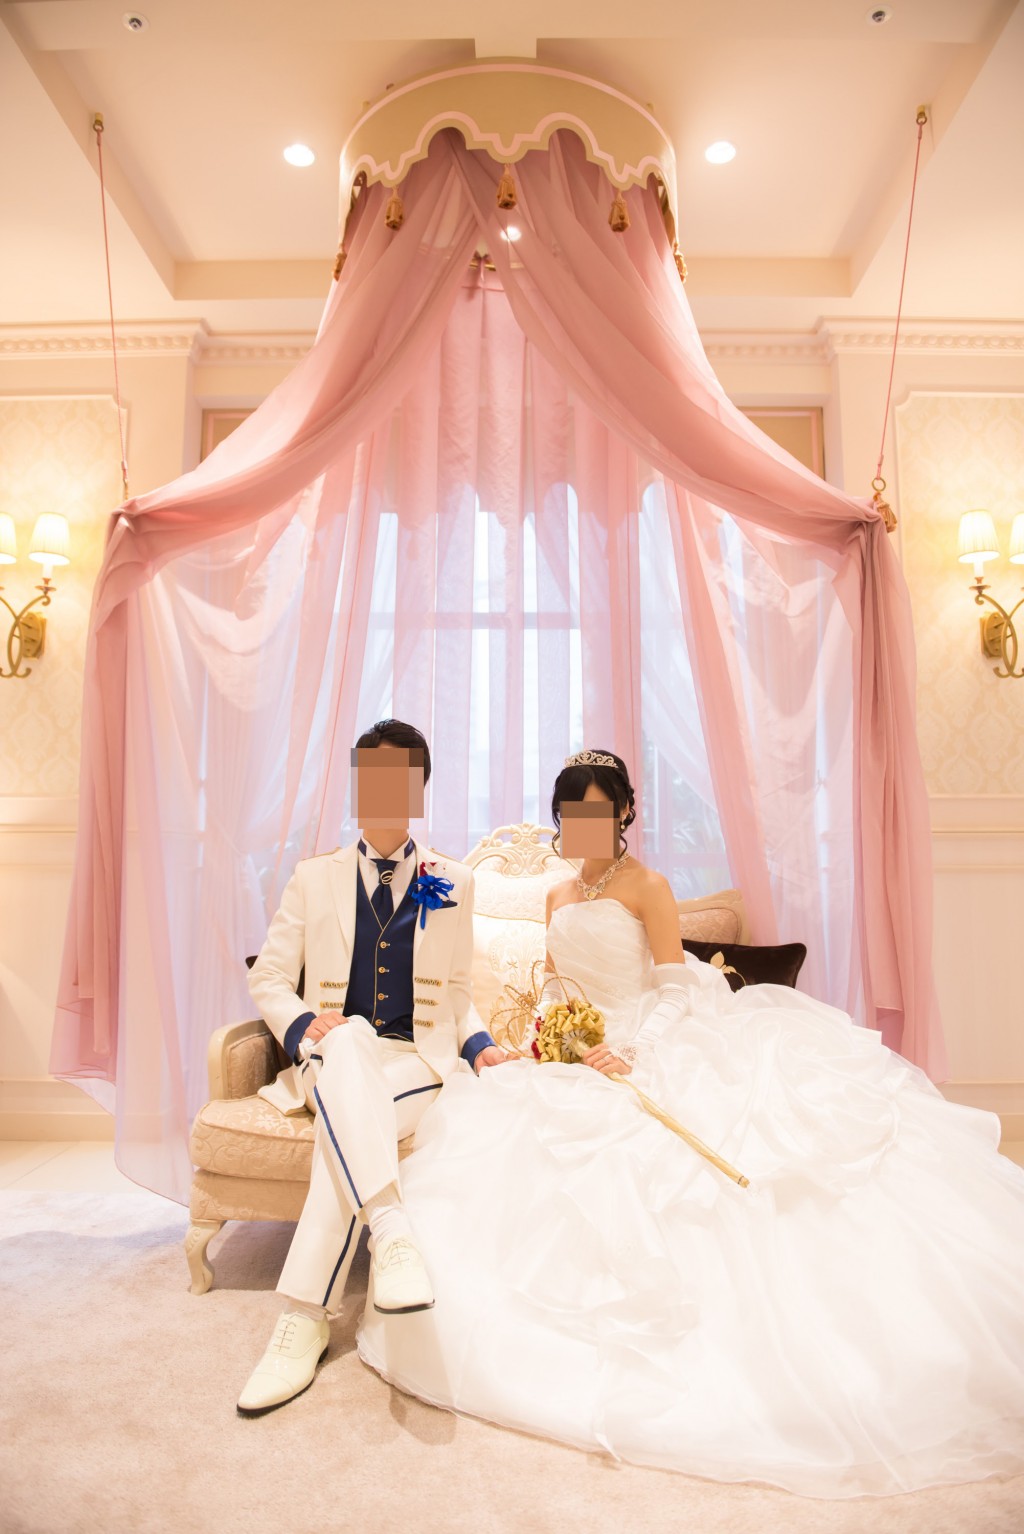 アニヴェルセルみなとみらい横浜 結婚式レポブログ 披露宴会場ヴィラスウィートでの前撮り風写真撮影